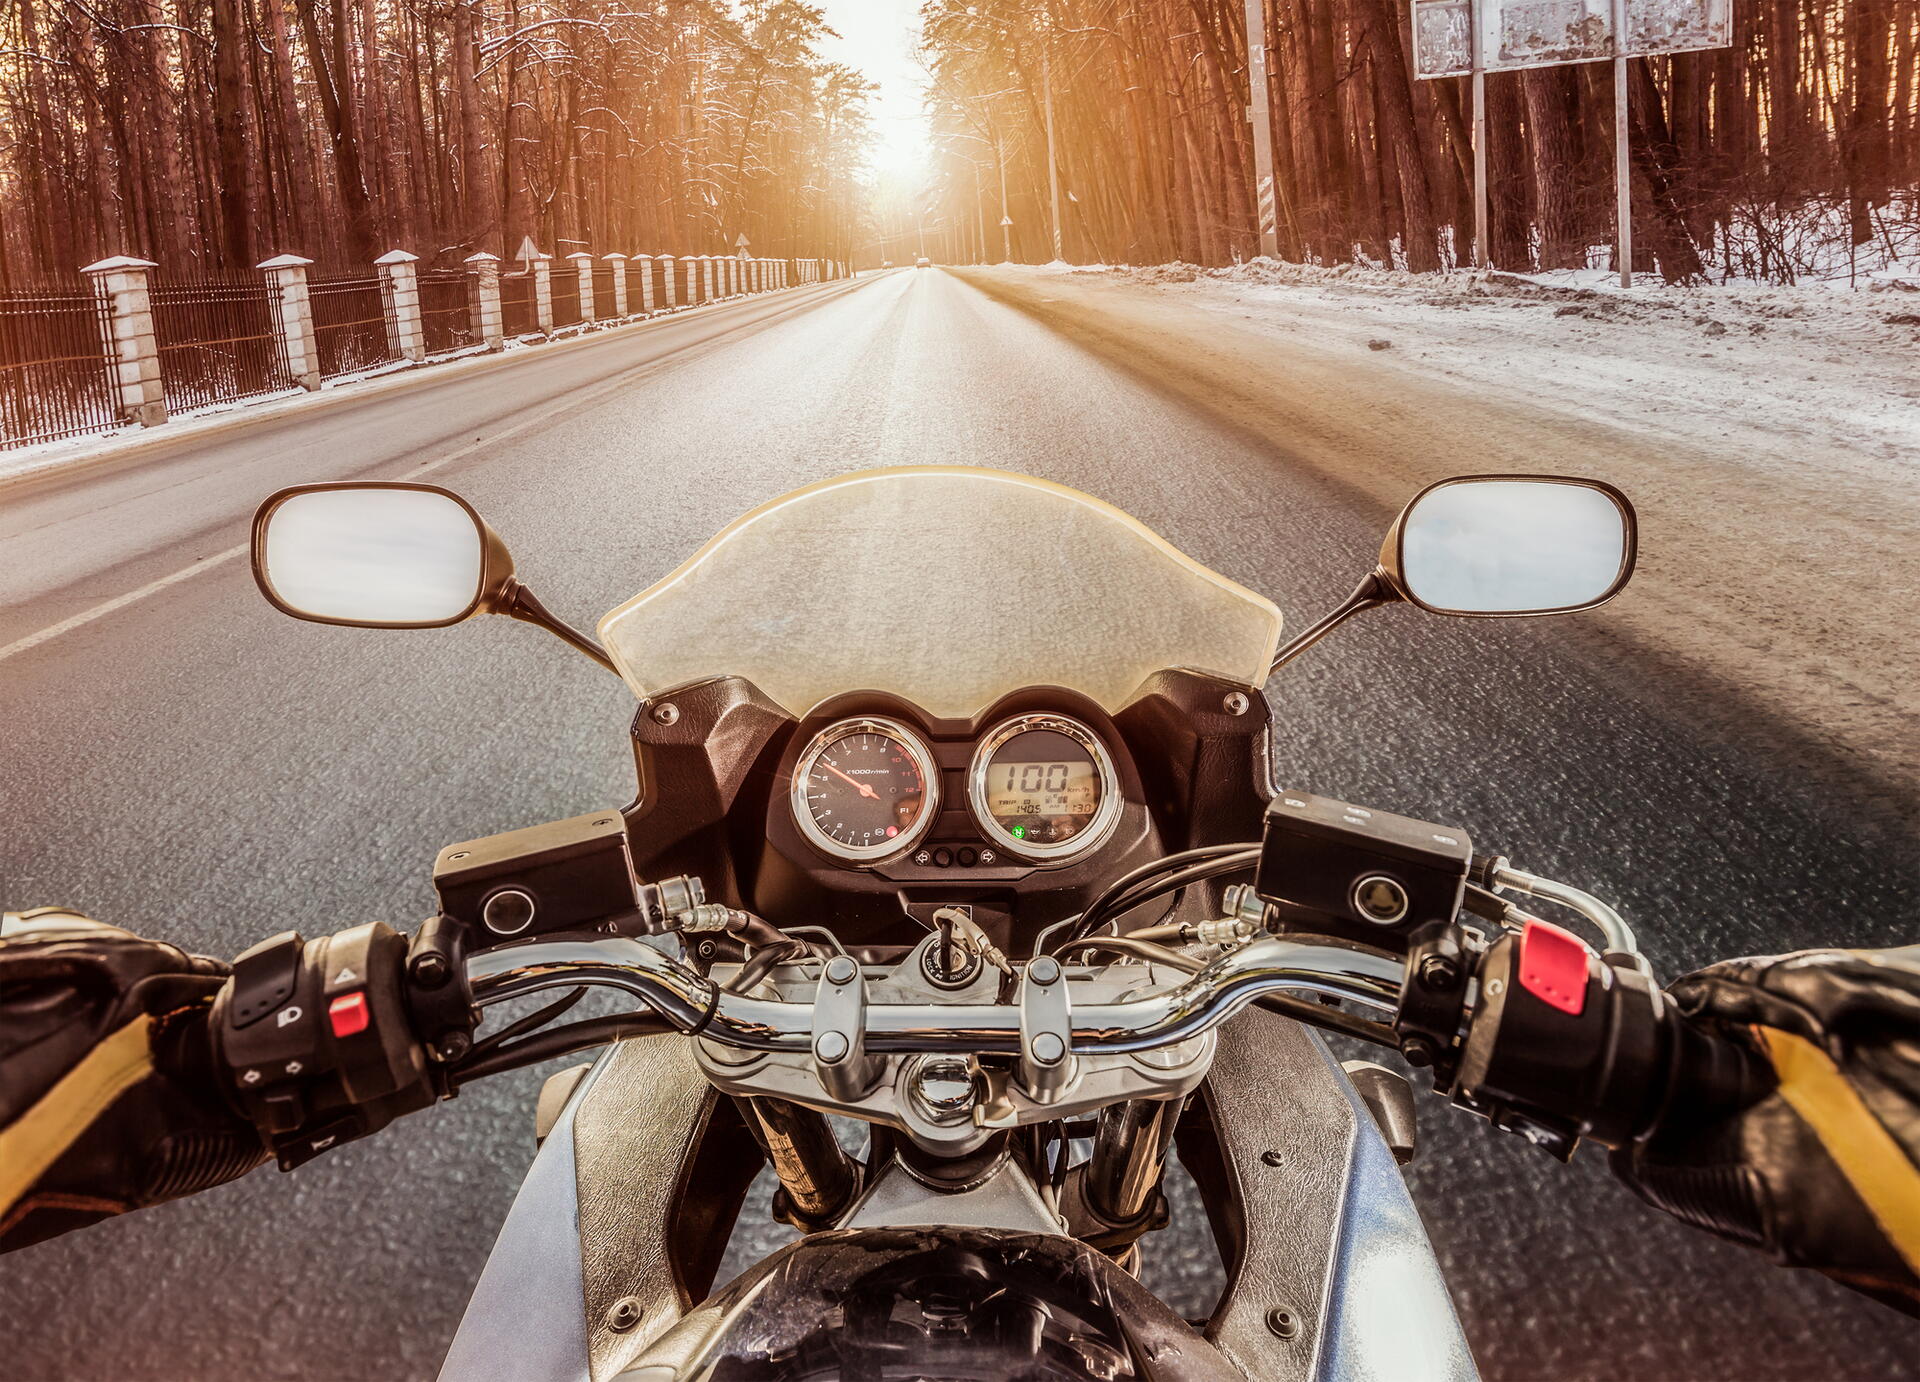 Zbytky soli po zimě mohou poškodit motorku